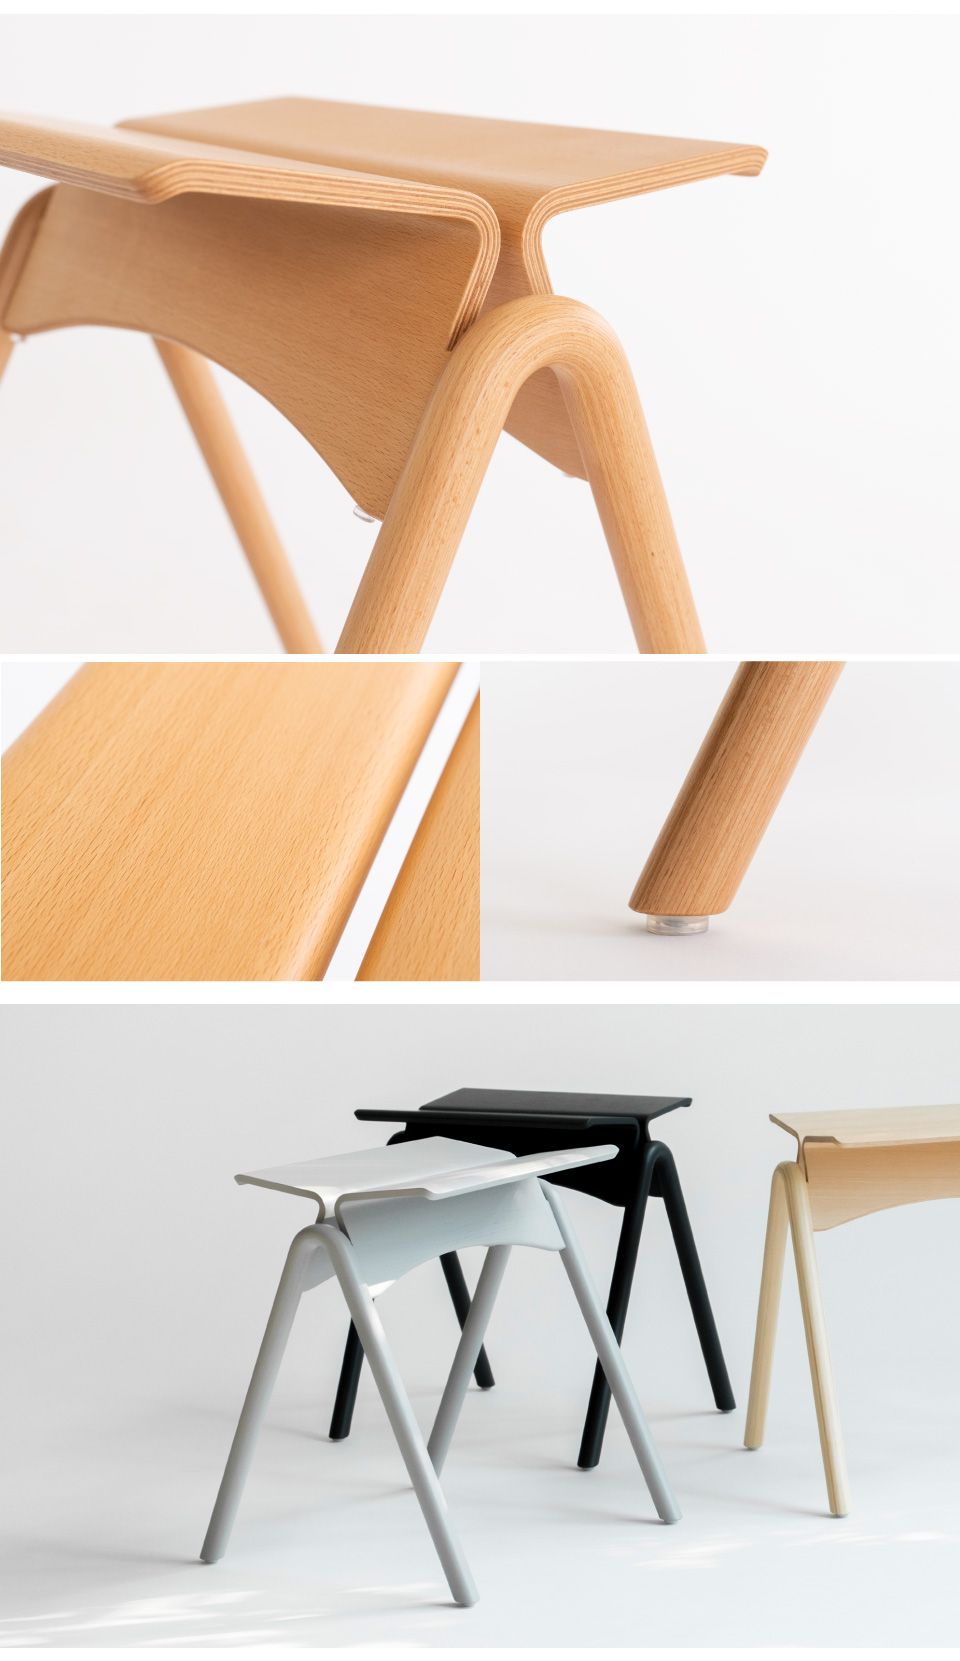 IKASAS design カモメ スツール KAMOME STOOL チェア 椅子 おしゃれ チェアー スツール 木製 無垢 北欧 木 家具 イカサ